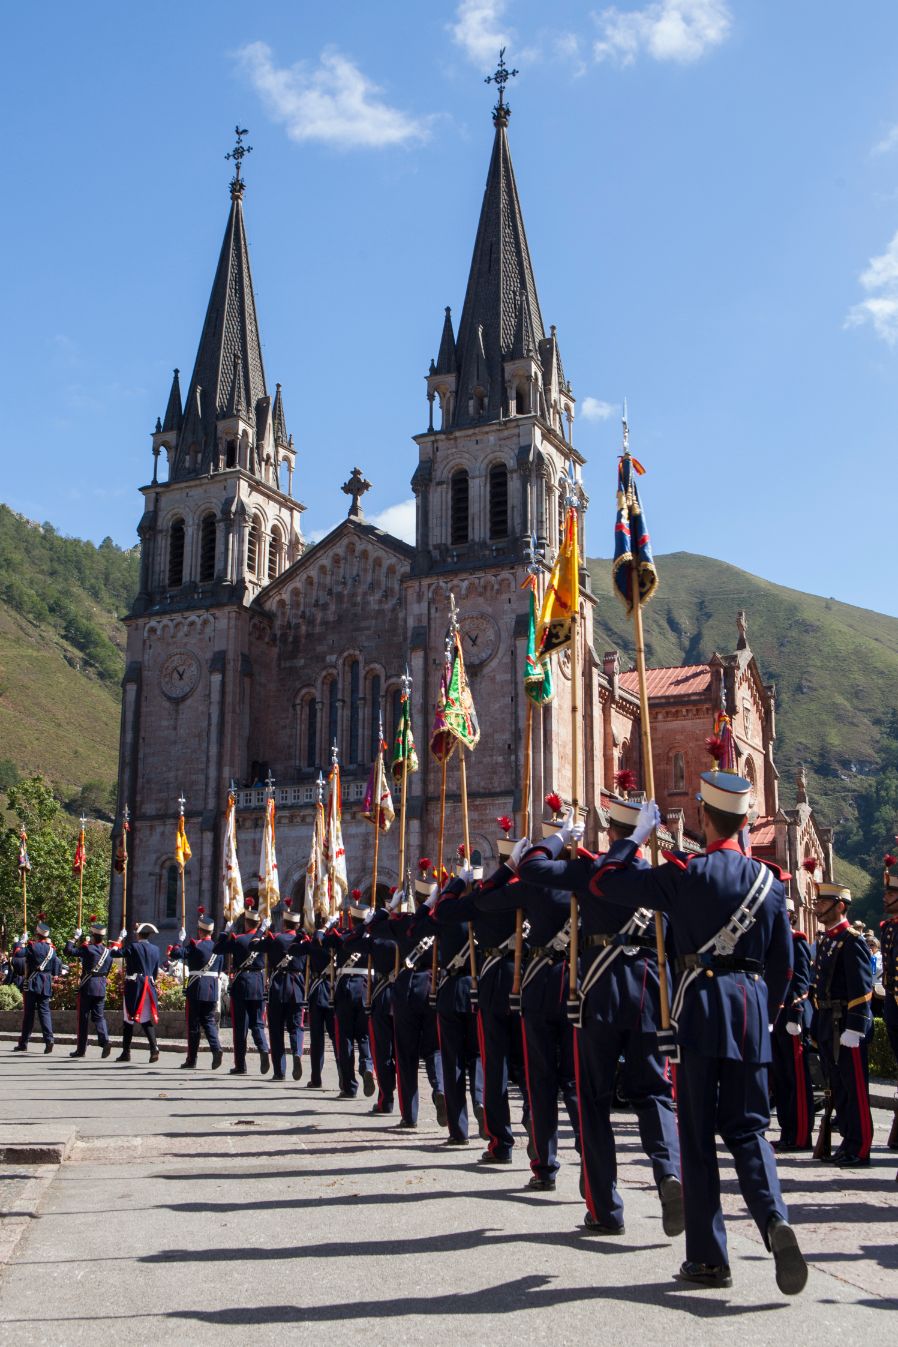 Actividades del Ejercicio de la Guardia Real Asturias 2015